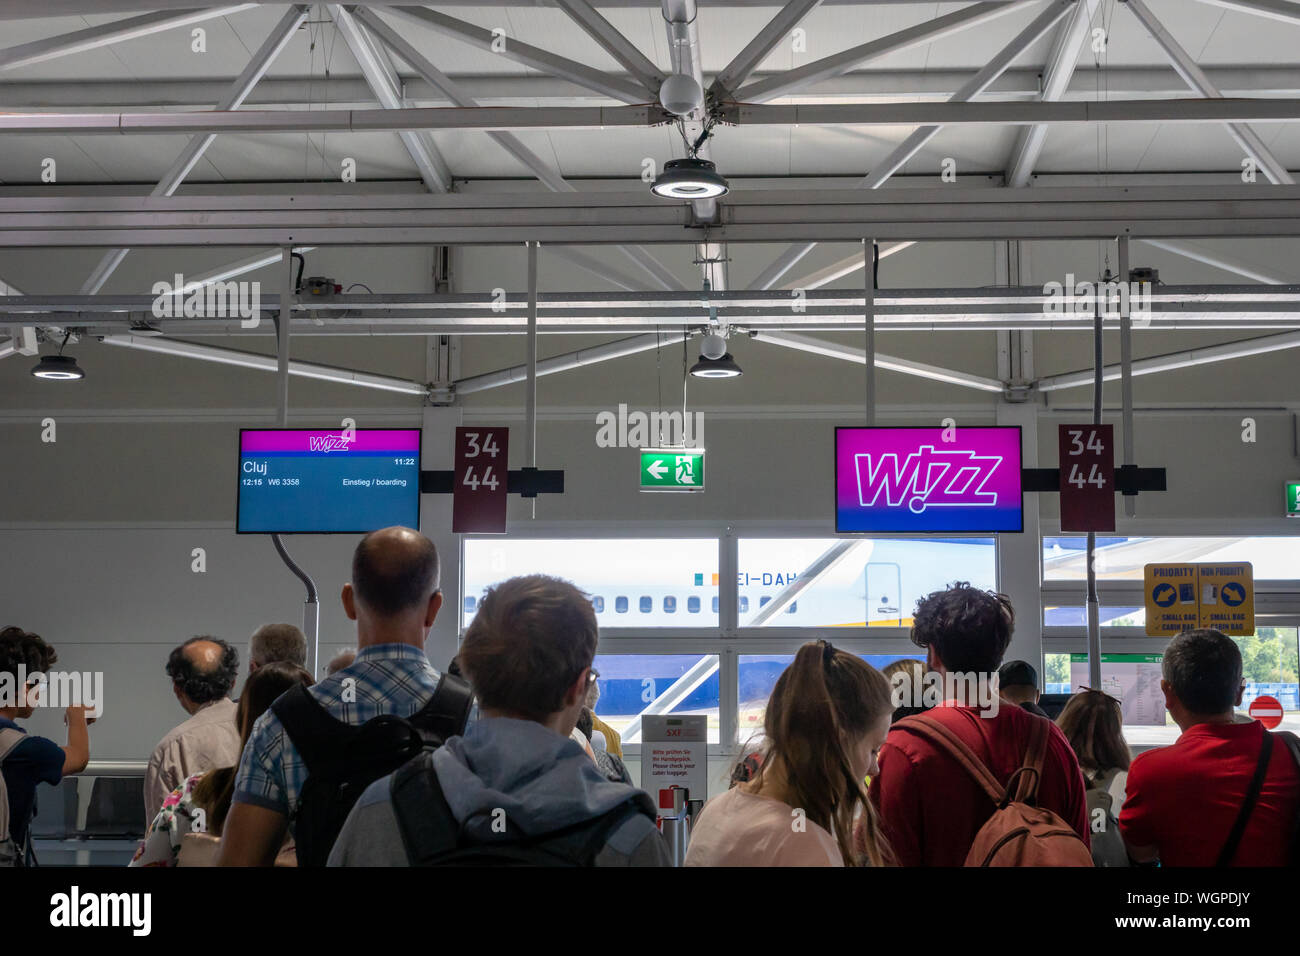 Berlin, Deutschland - Juli 2019: Wizz Air Check-in-Schalter in Berlin Flughafen Schönefeld liegt. Wizz Air ist eine ungarische Billigfluggesellschaft Europas Stockfoto